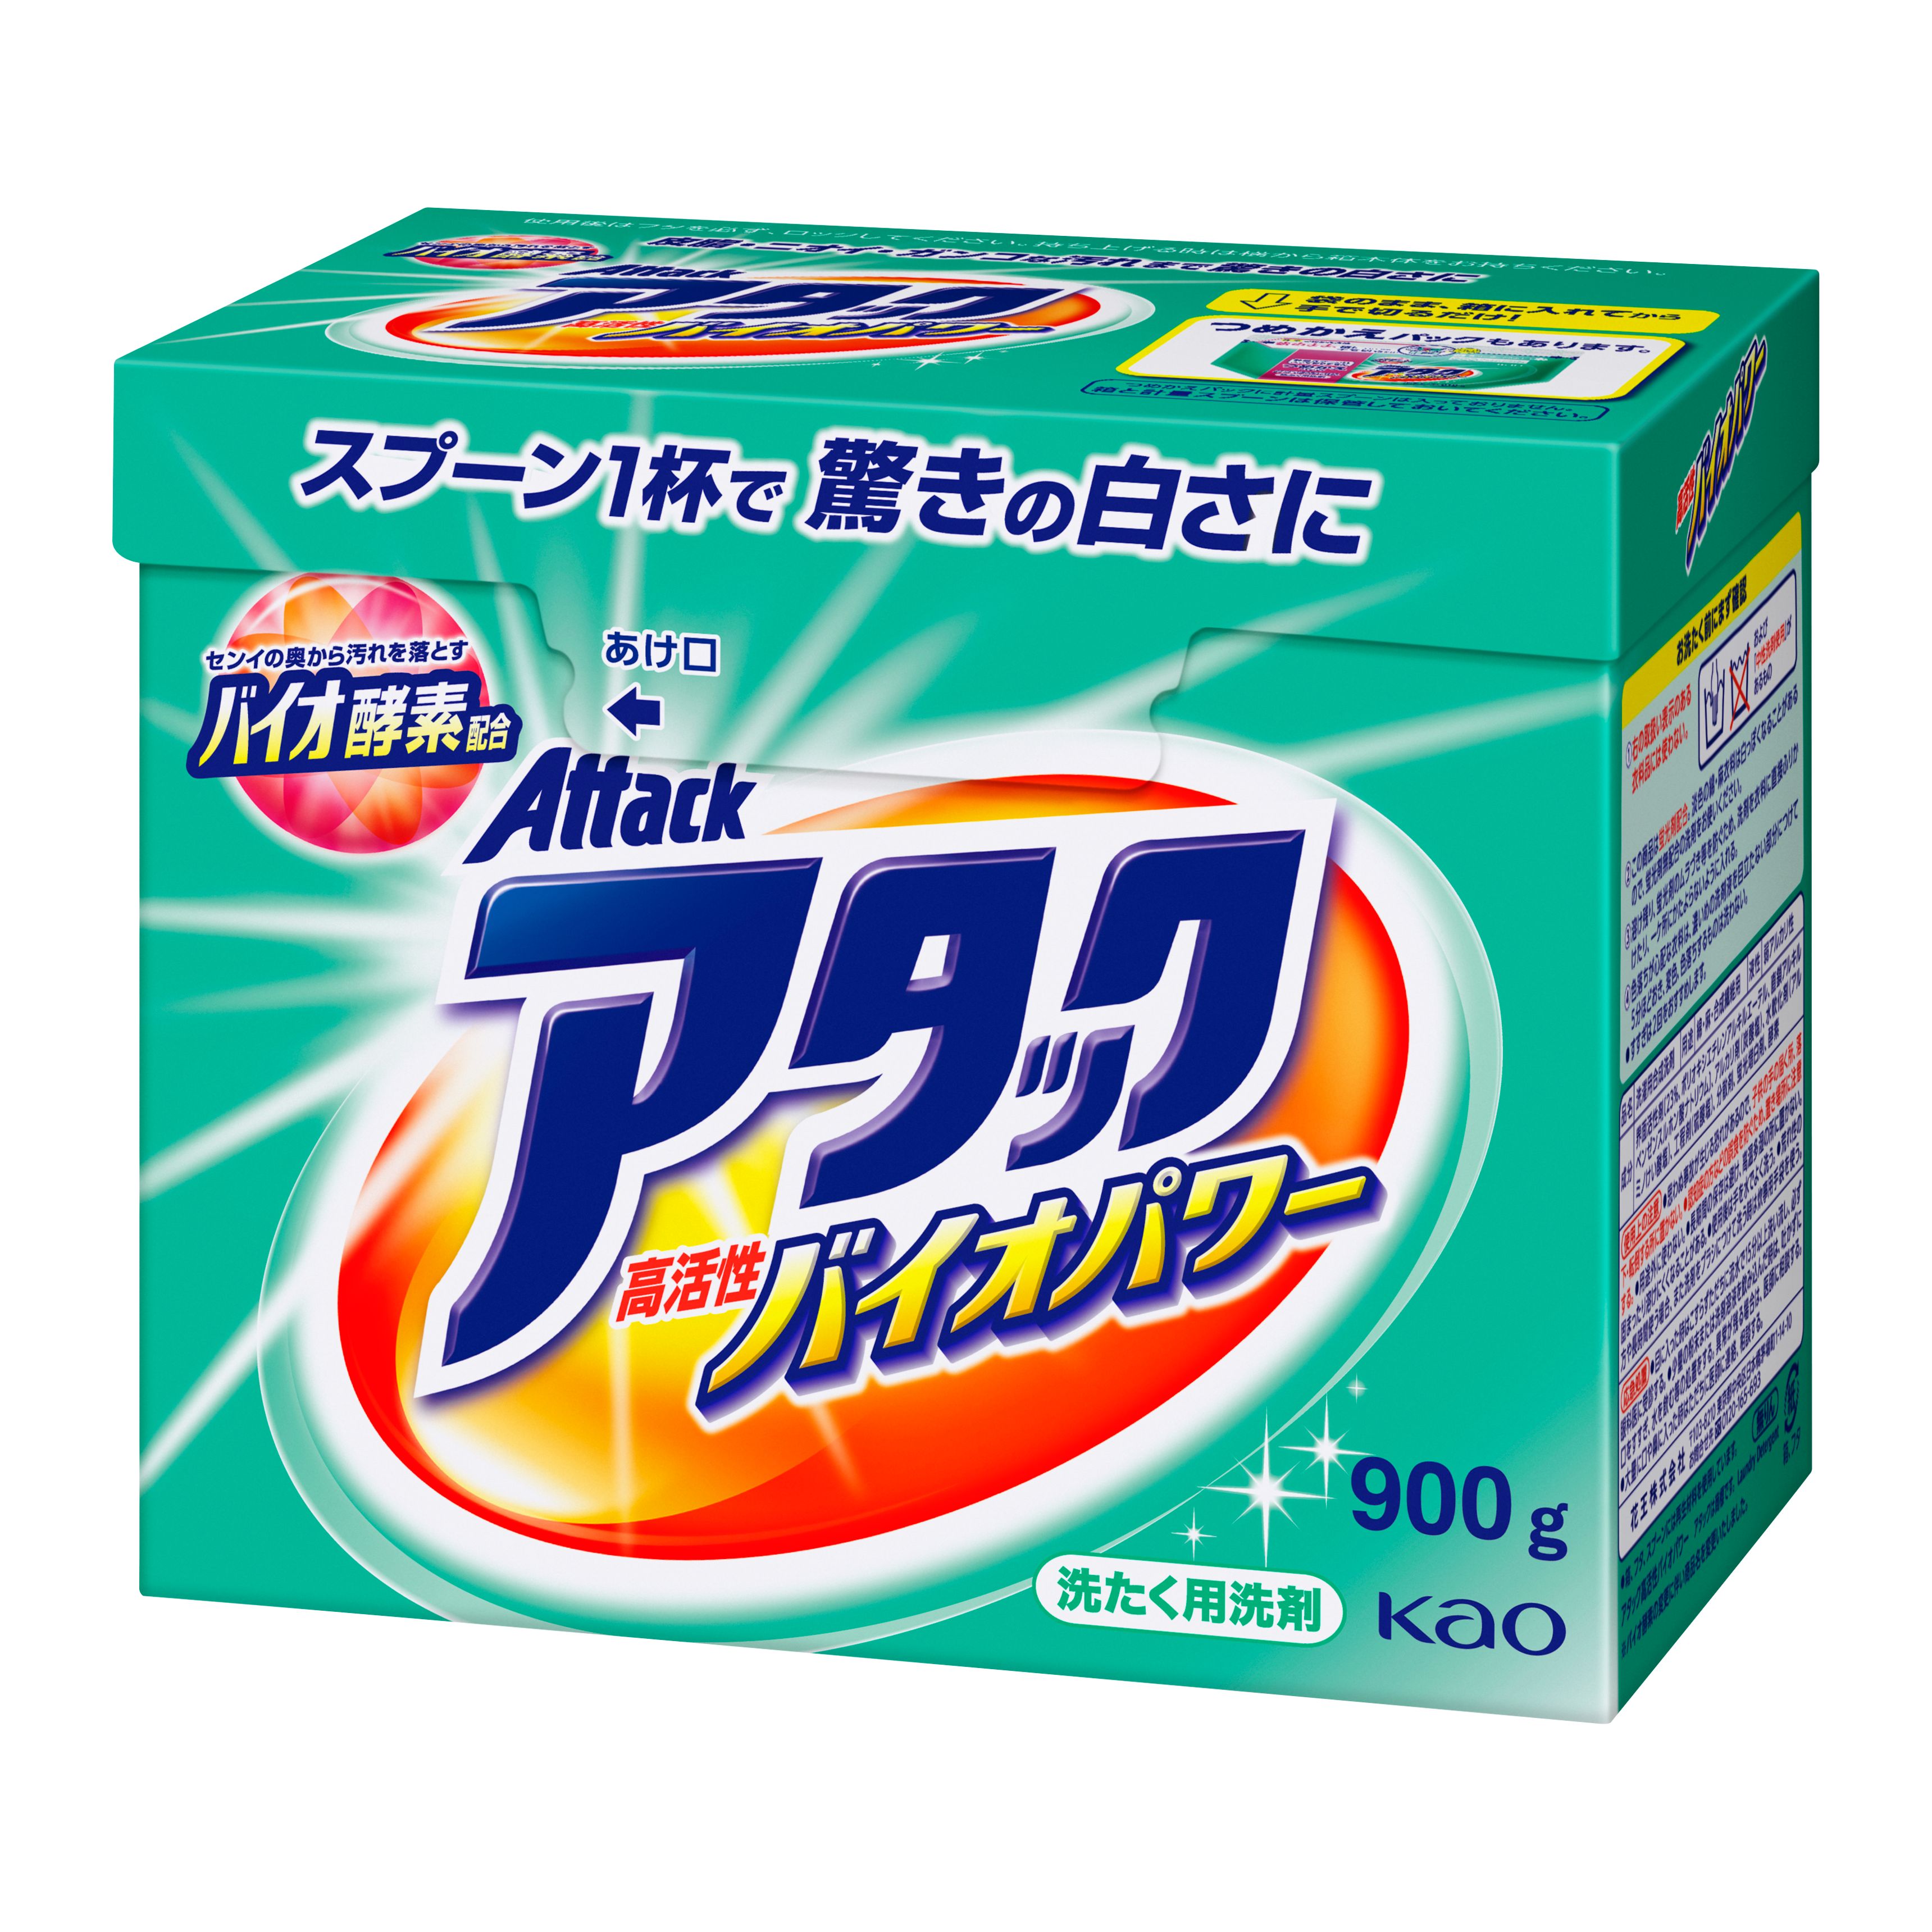 ケース販売アタック 洗濯洗剤 粉末 高活性バイオEX 900g×8個 【返品